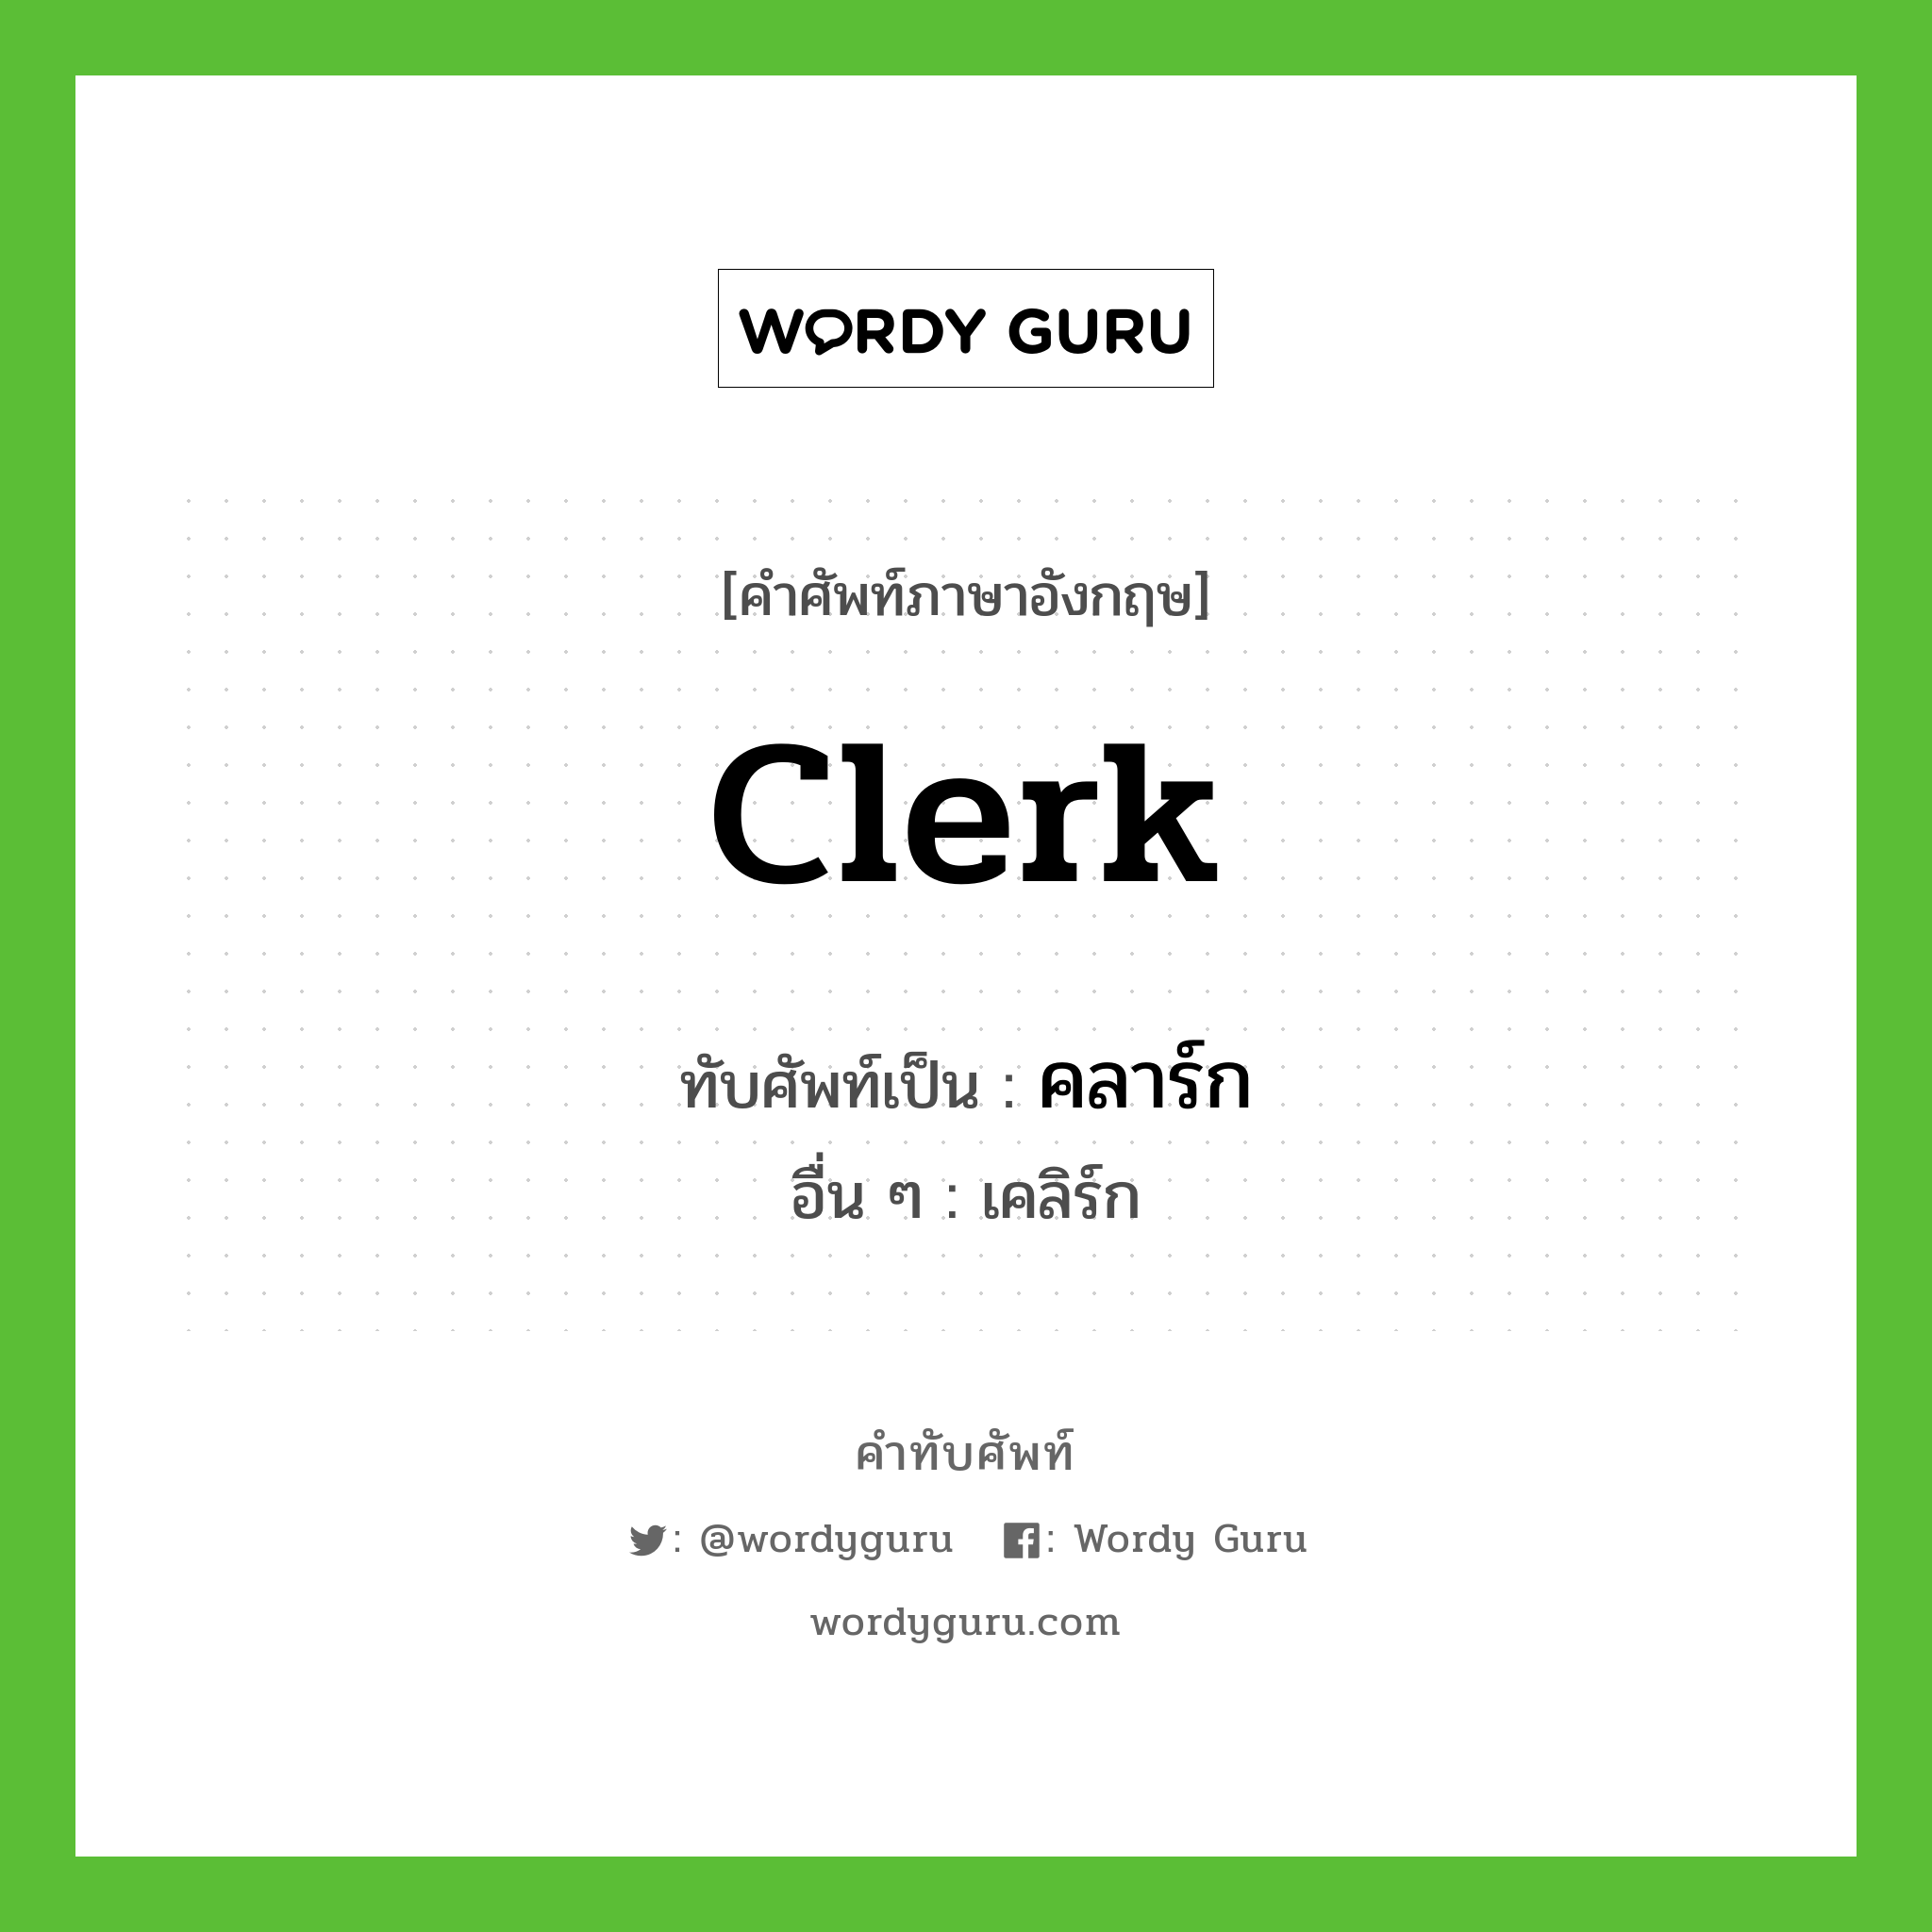 คลาร์ก เขียนอย่างไร?, คำศัพท์ภาษาอังกฤษ คลาร์ก ทับศัพท์เป็น clerk อื่น ๆ เคลิร์ก